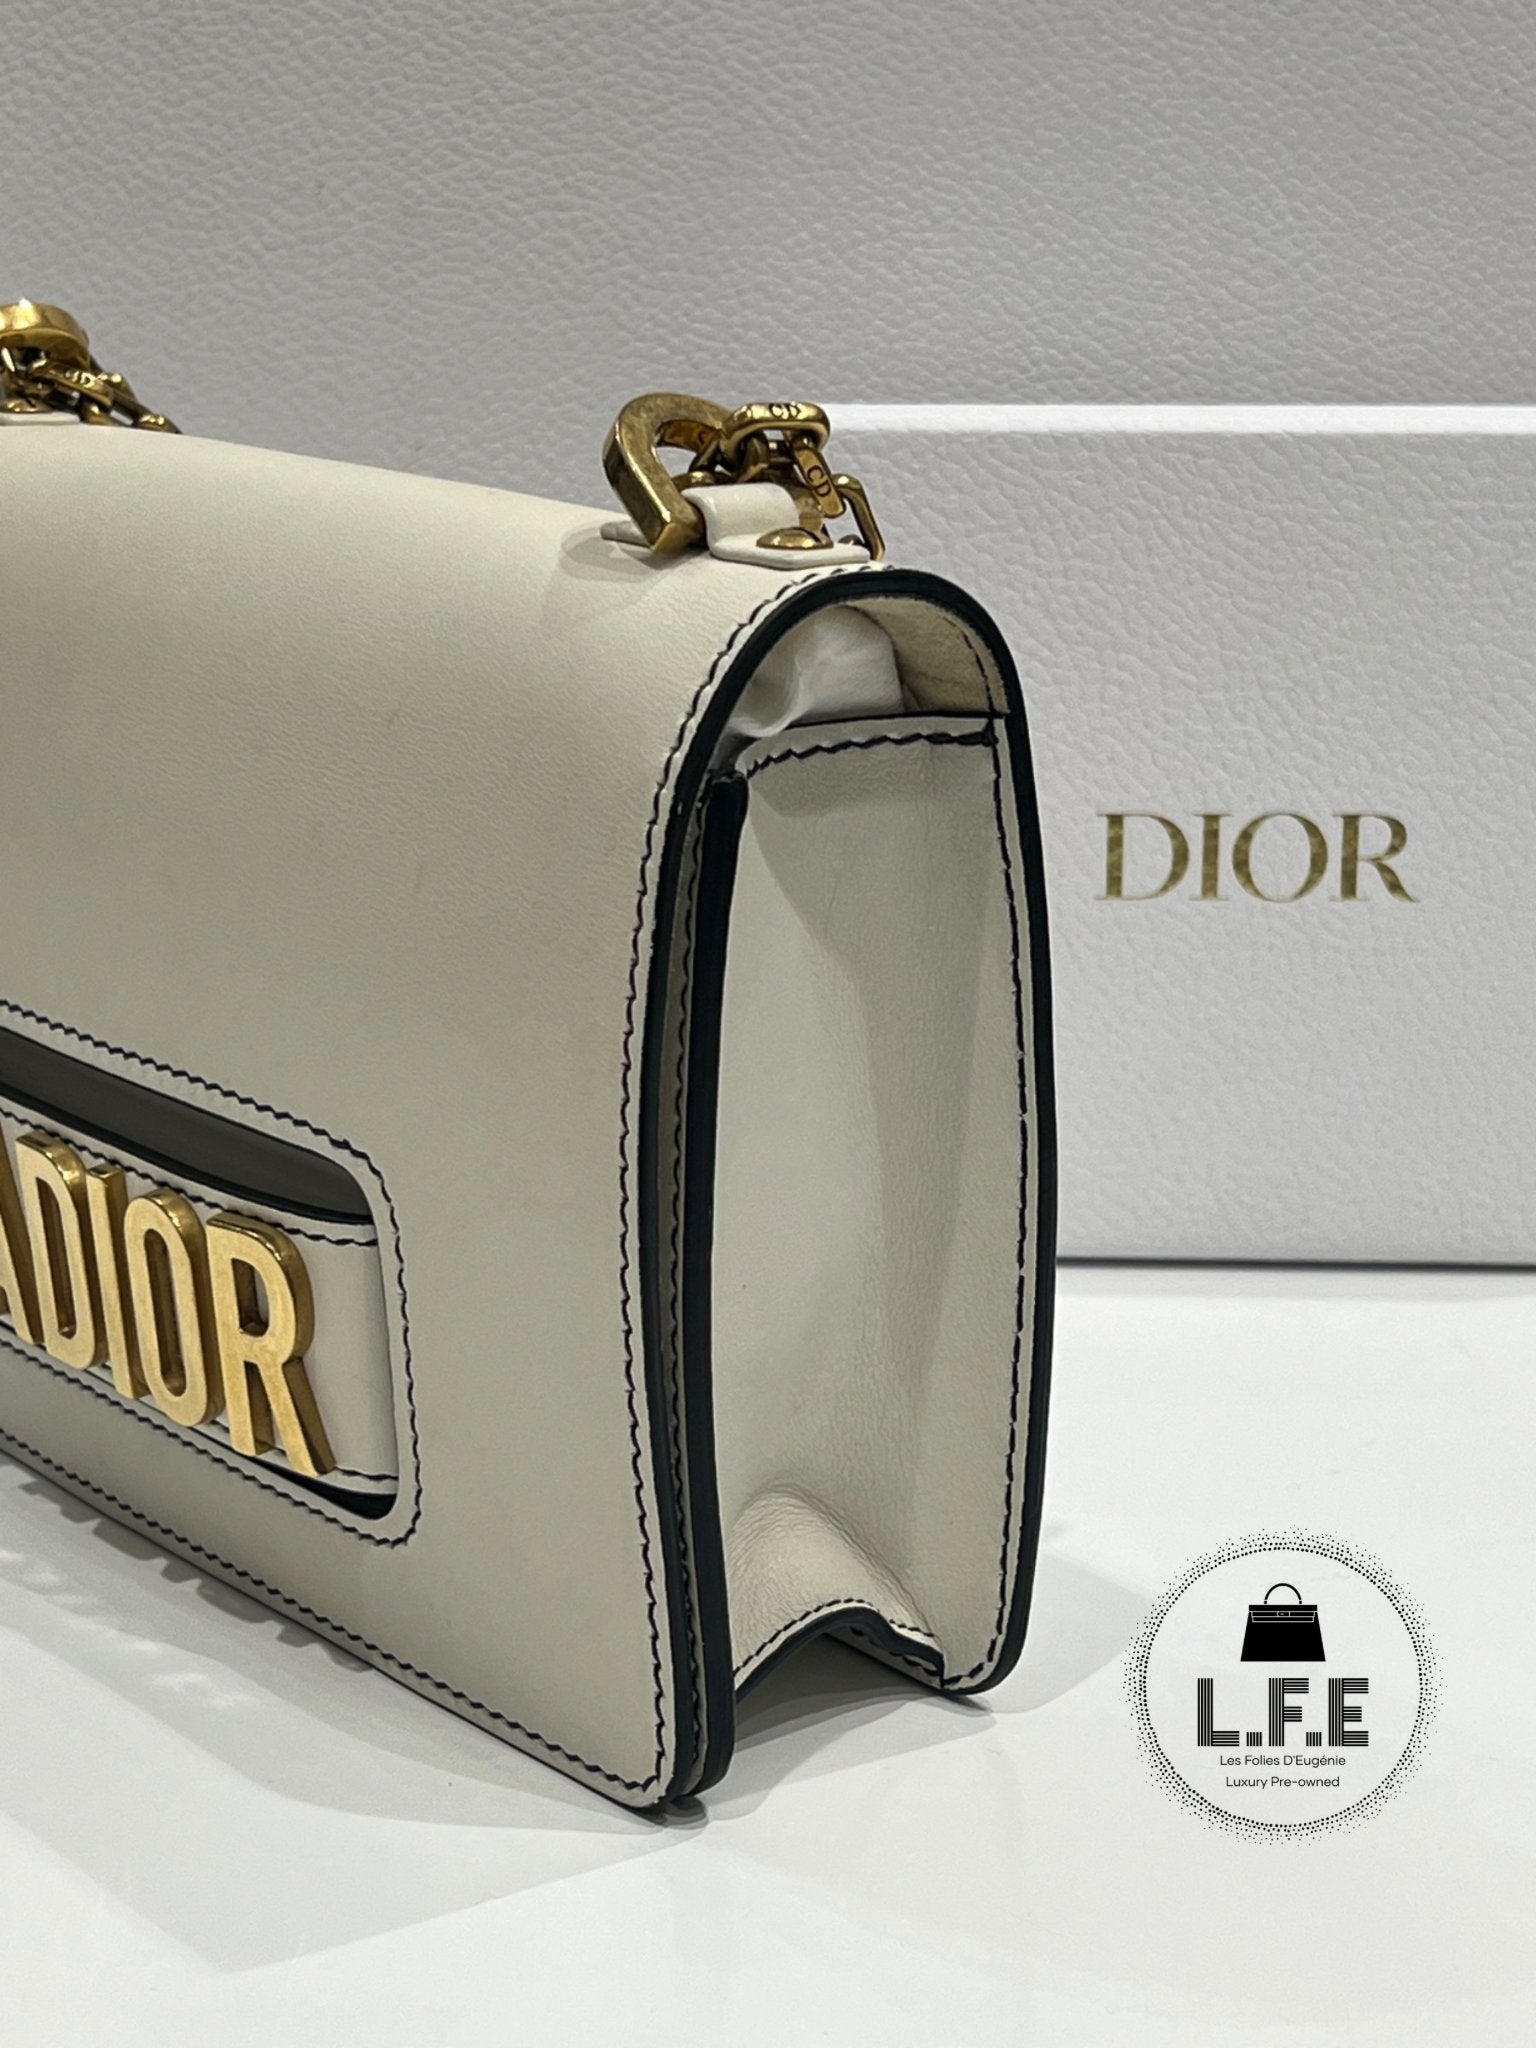 Dior - Sac J’adior PM - Les Folies d&